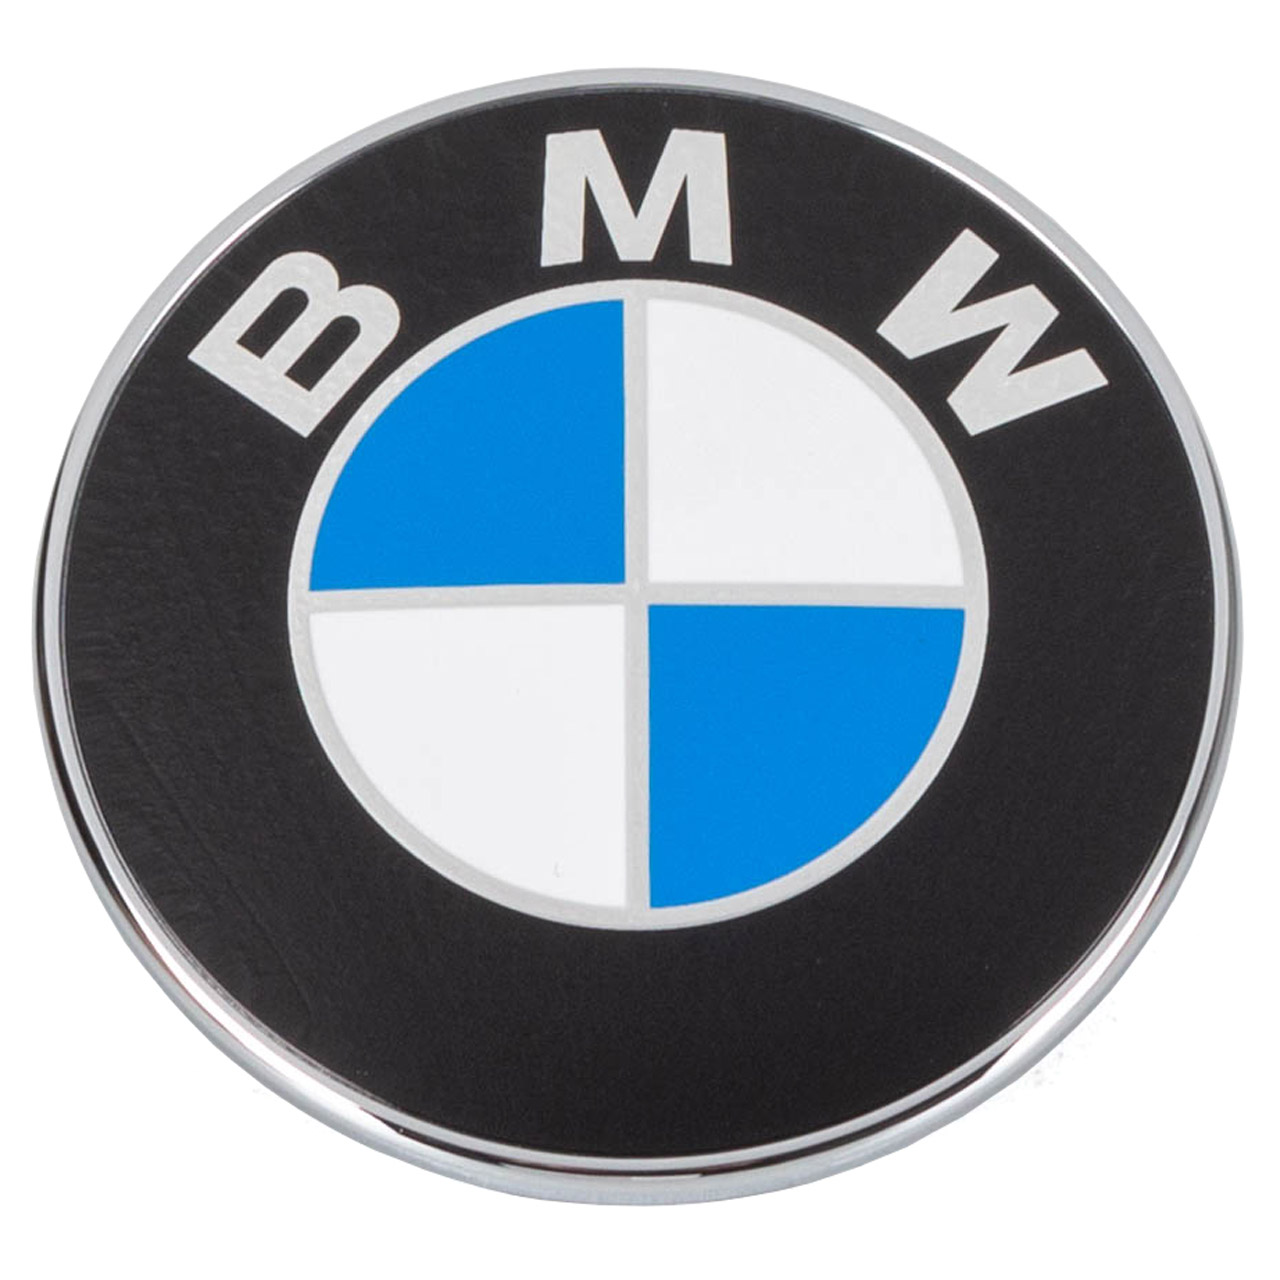 ORIGINAL BMW Emblem Ø 70mm Z4 E85 E89 Roadster E86 Coupe vorne 51147044207